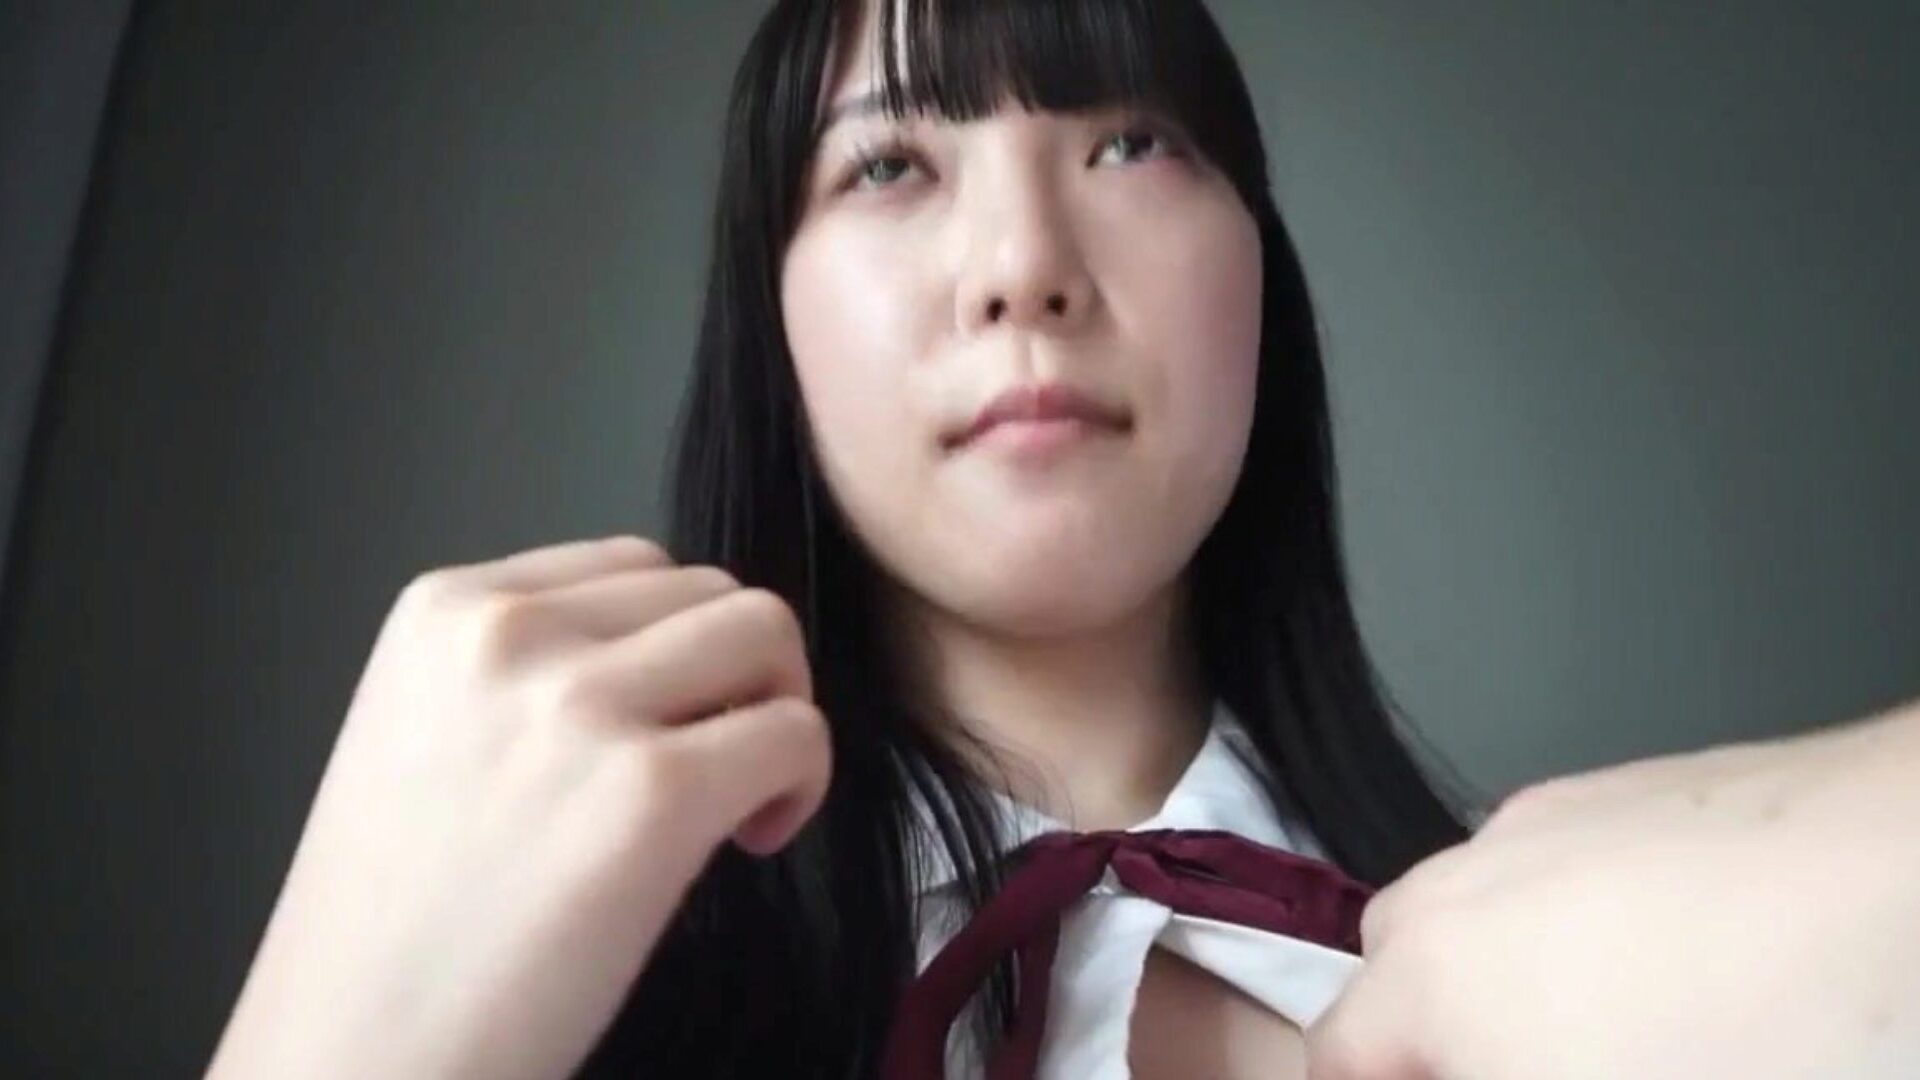 فتاة المدرسة اليابانية IKU-IKU-IKU-IKU- أغسطس 2020